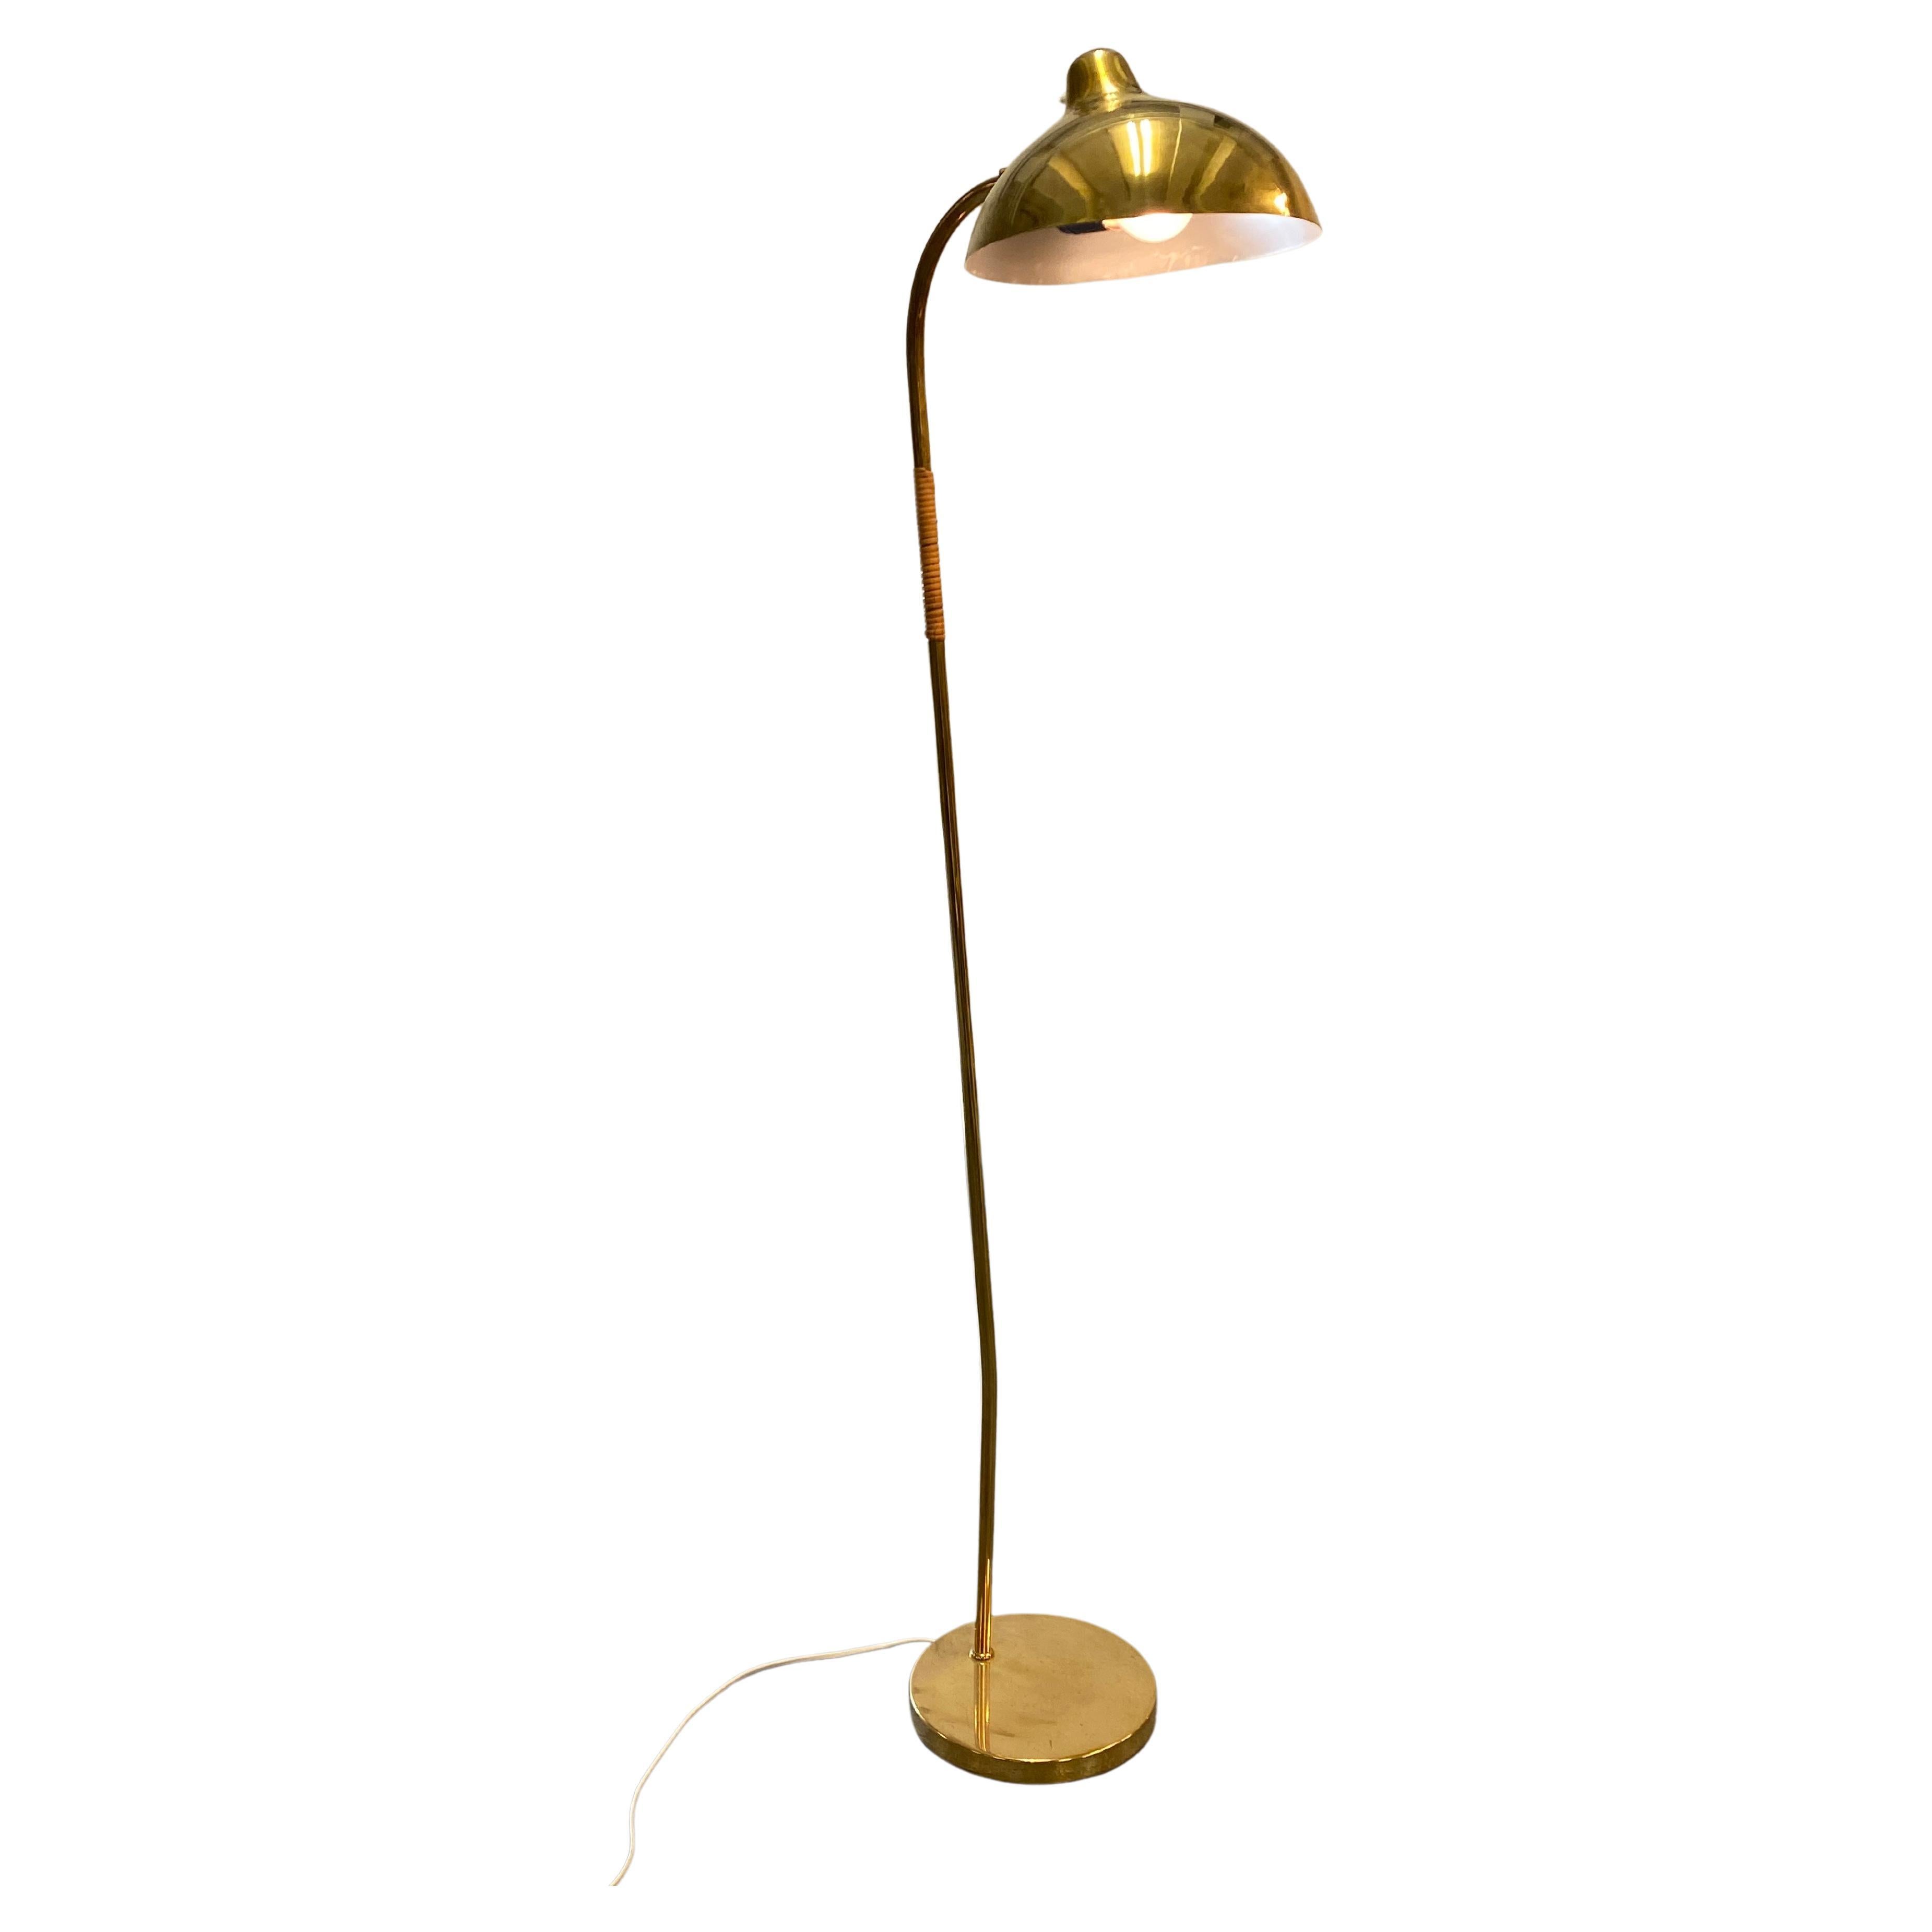 Eine äußerst seltene und schöne Stehlampe aus Messing (Rattan am Stiel), entworfen von Gunnel Nyman selbst und hergestellt von Idman. Diese spezielle Lampe ist sehr schwer zu bekommen und wird aufgrund der geringen Dokumentation oft mit einer Tynell